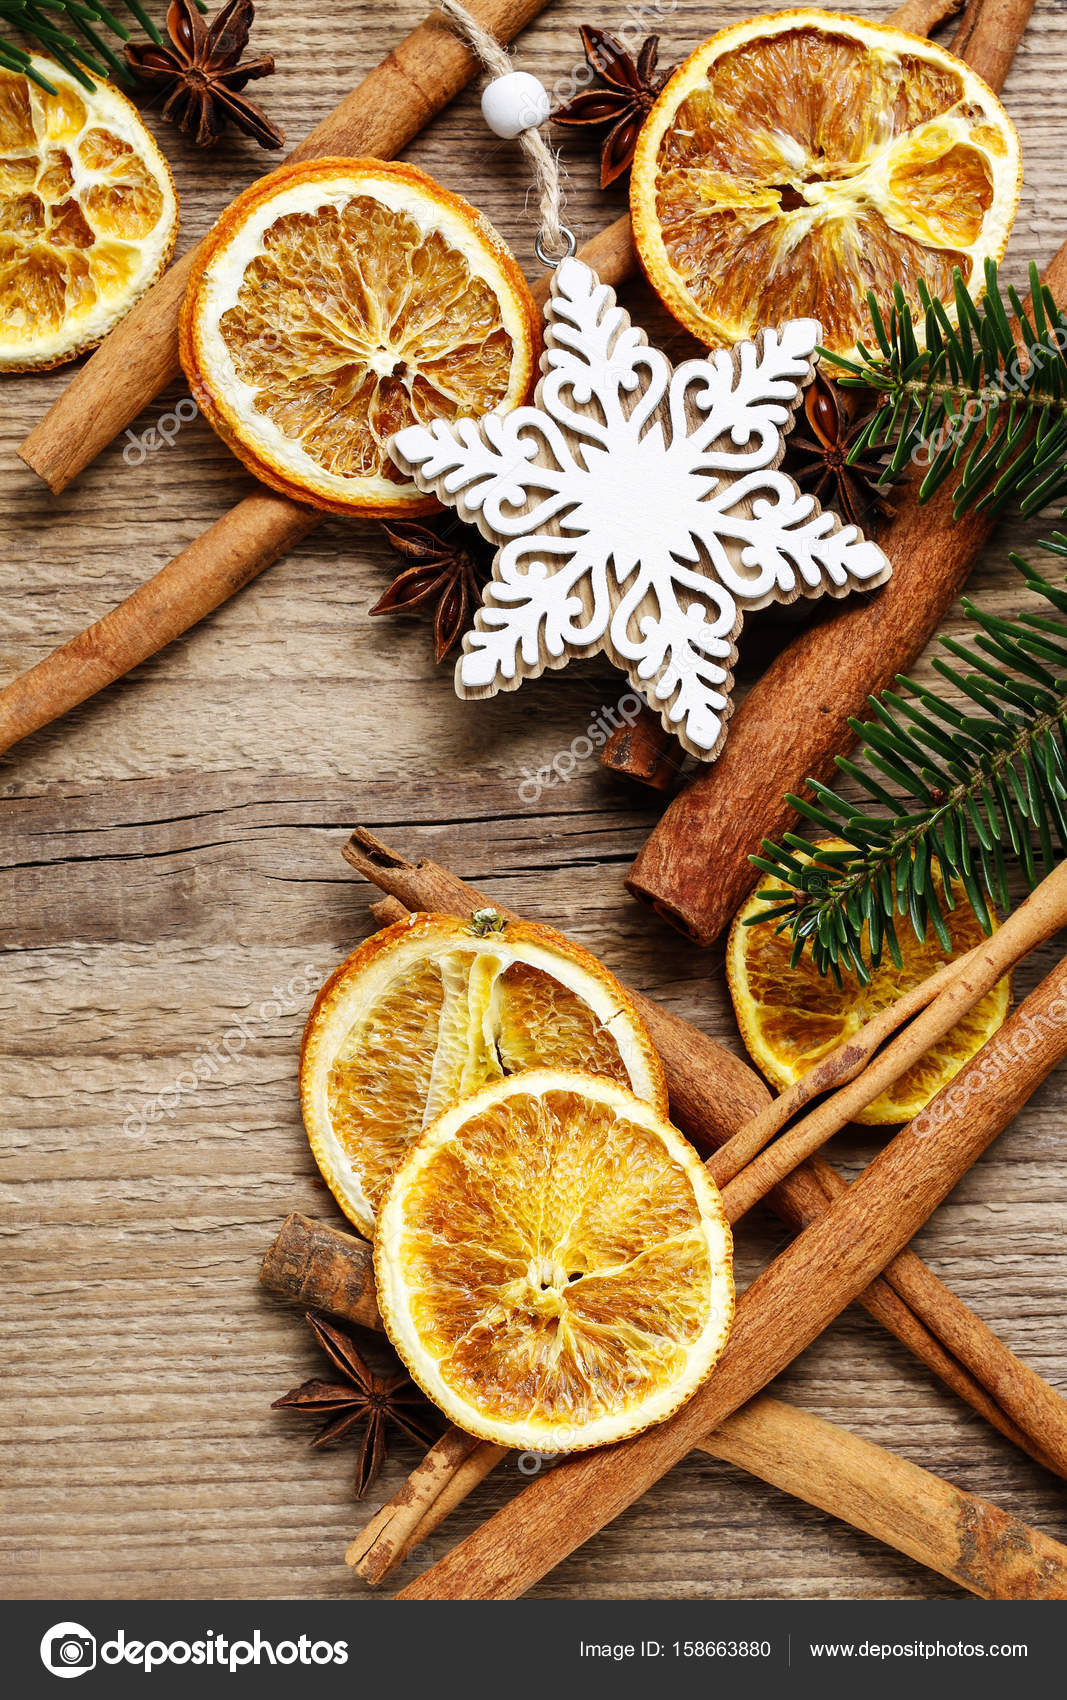 38 Aromatic Cinnamon Décor Ideas For Christmas - DigsDigs